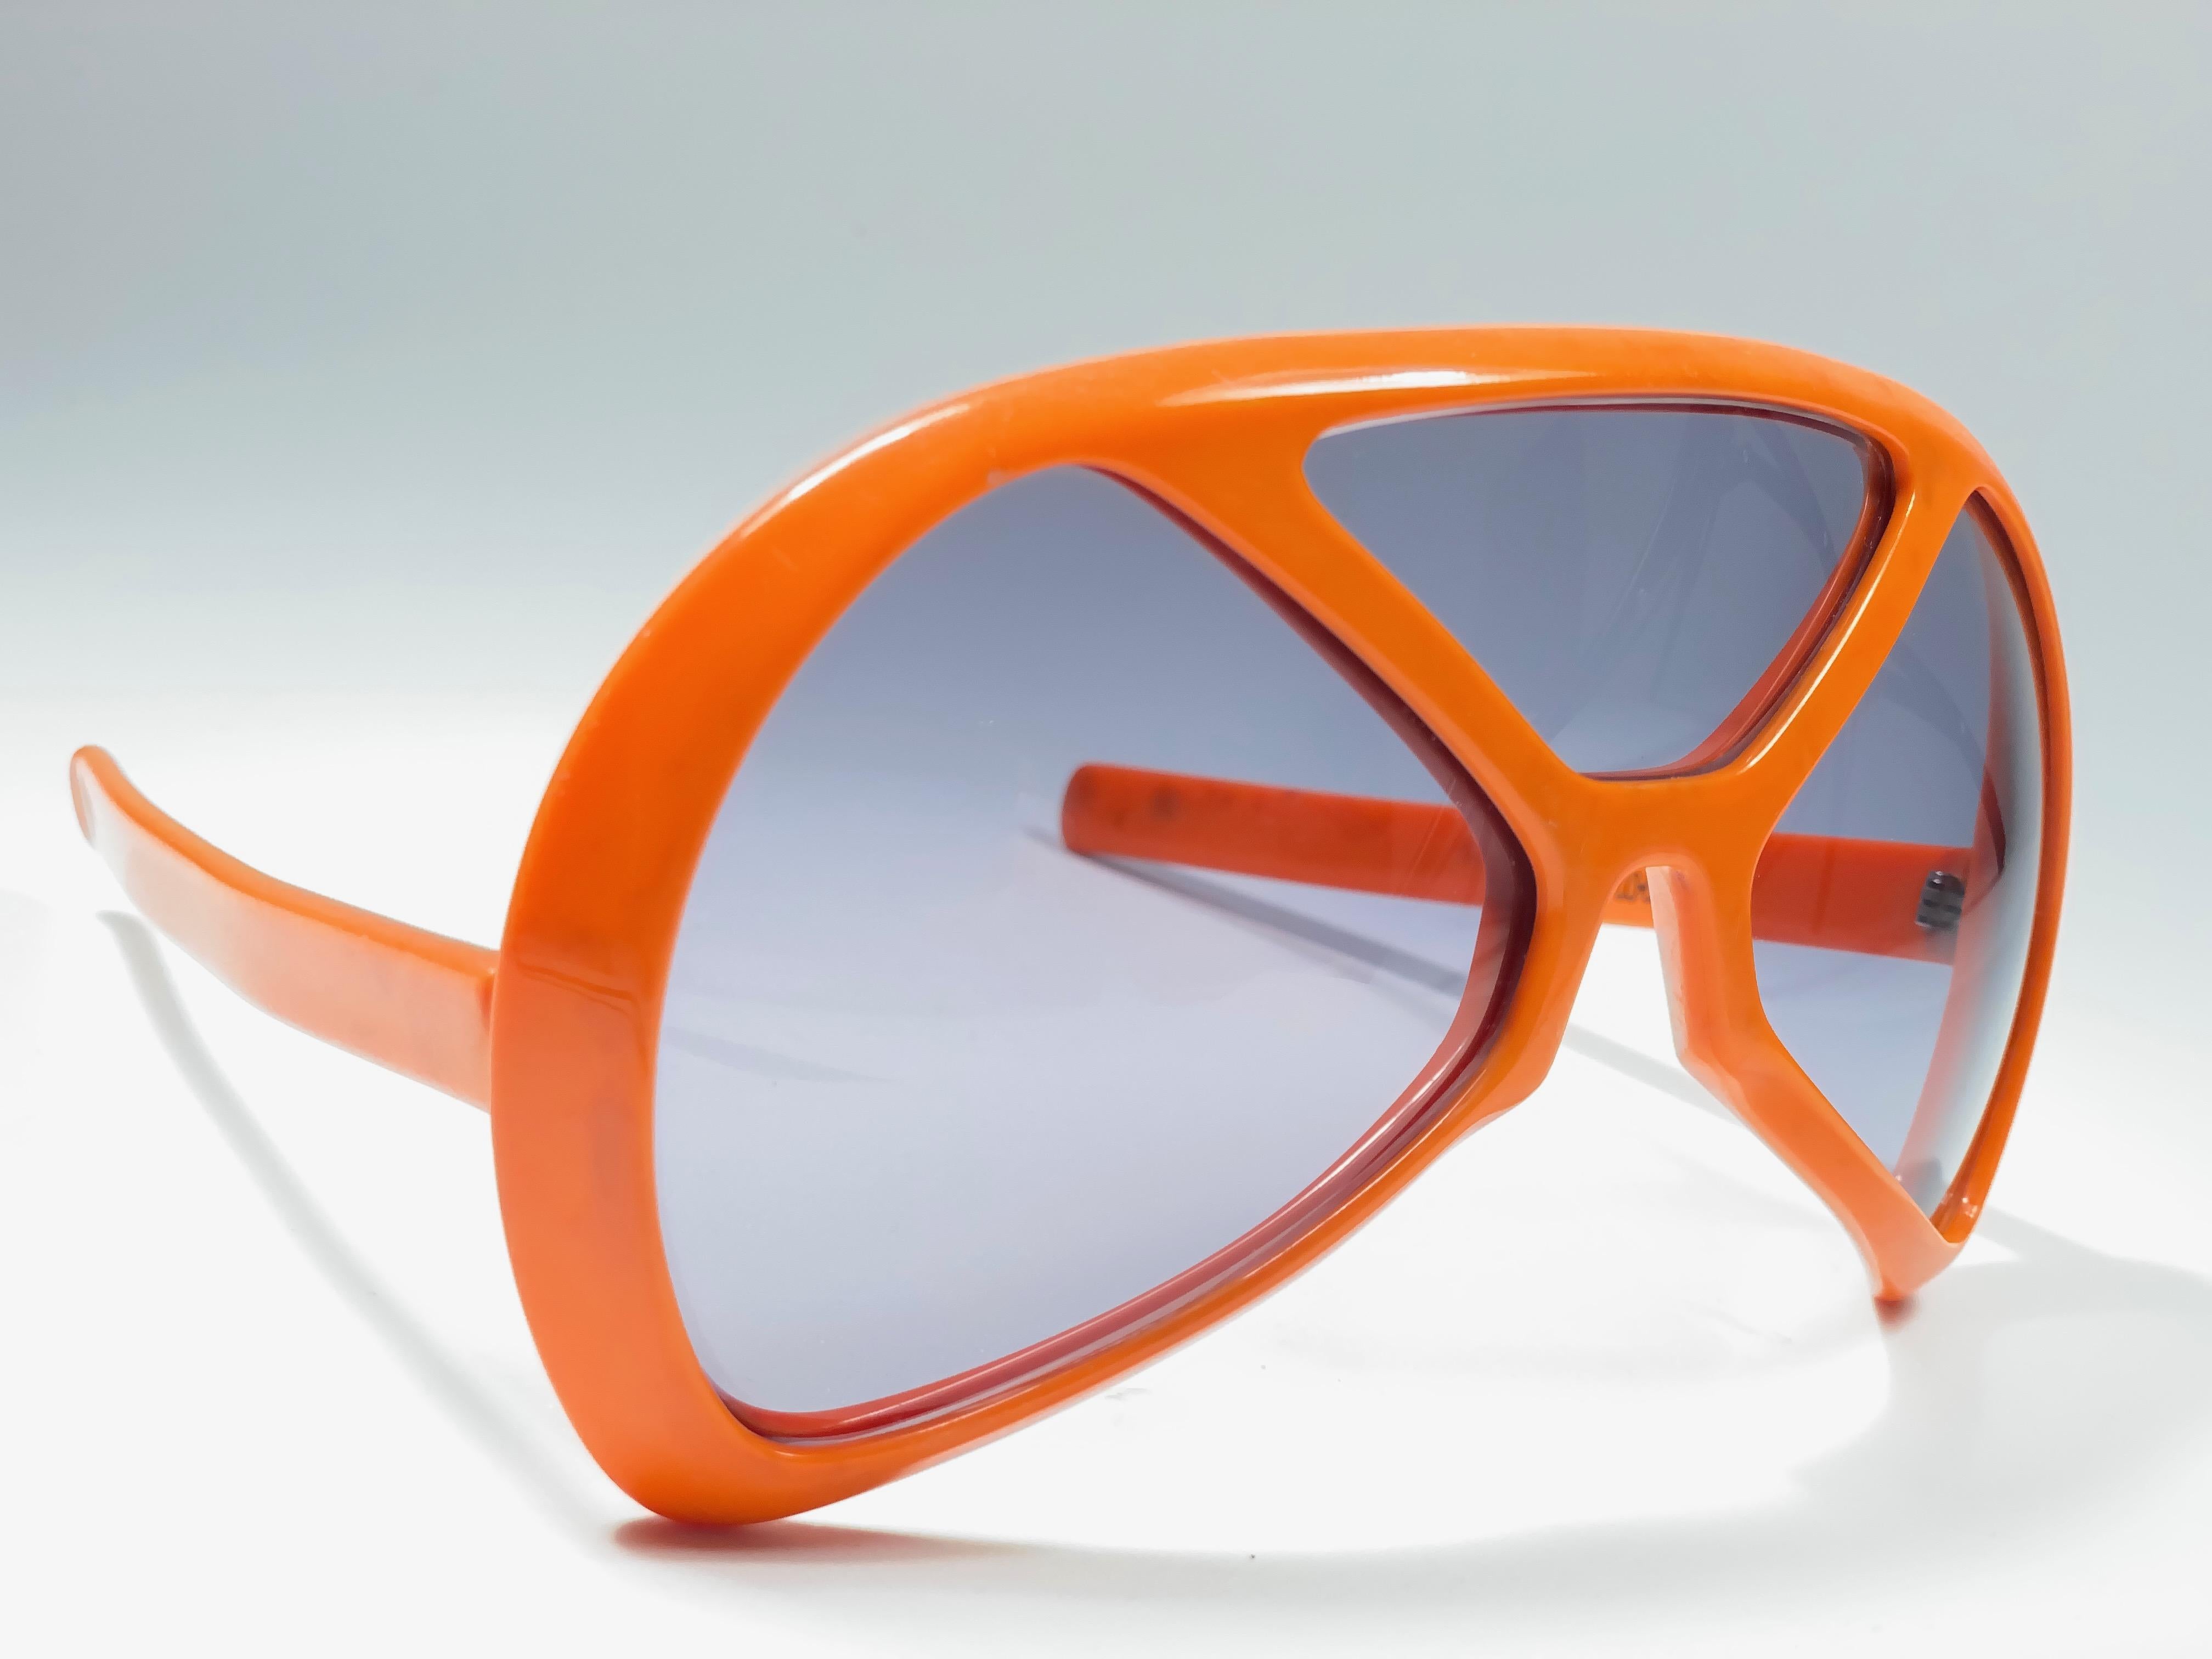 Vintage Vintage Collector Item Silhouette Futura 570 en orange vibrant.

Conçue par Dora Demmel en 1973, cette pièce rare est l'incarnation de la mode avant-gardiste et futuriste pour les lunettes.

Fabriqué en Allemagne dans les années 1970.

Cet